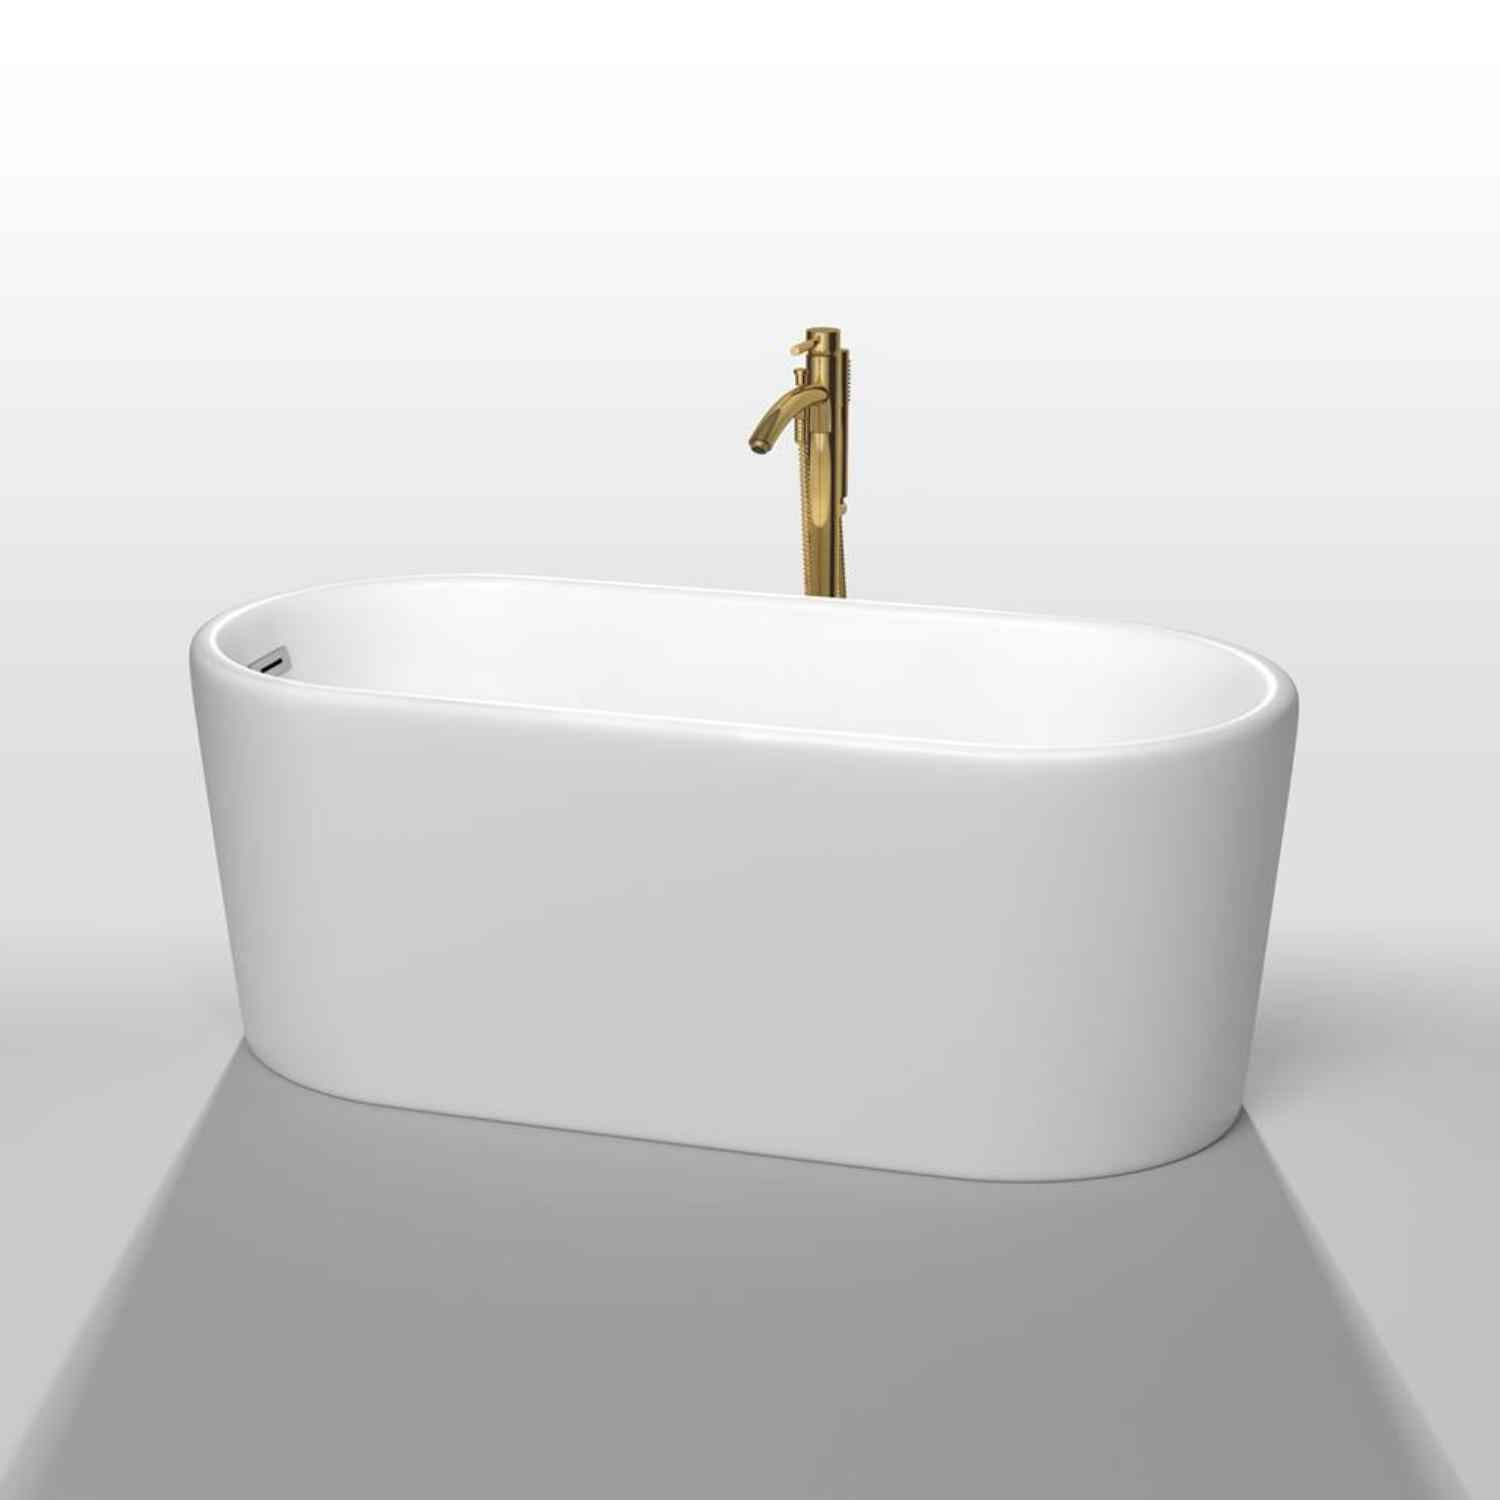 Wyndham collection Ursula 59 Inch Freestanding Bathtub in  Mate White golden fuchet